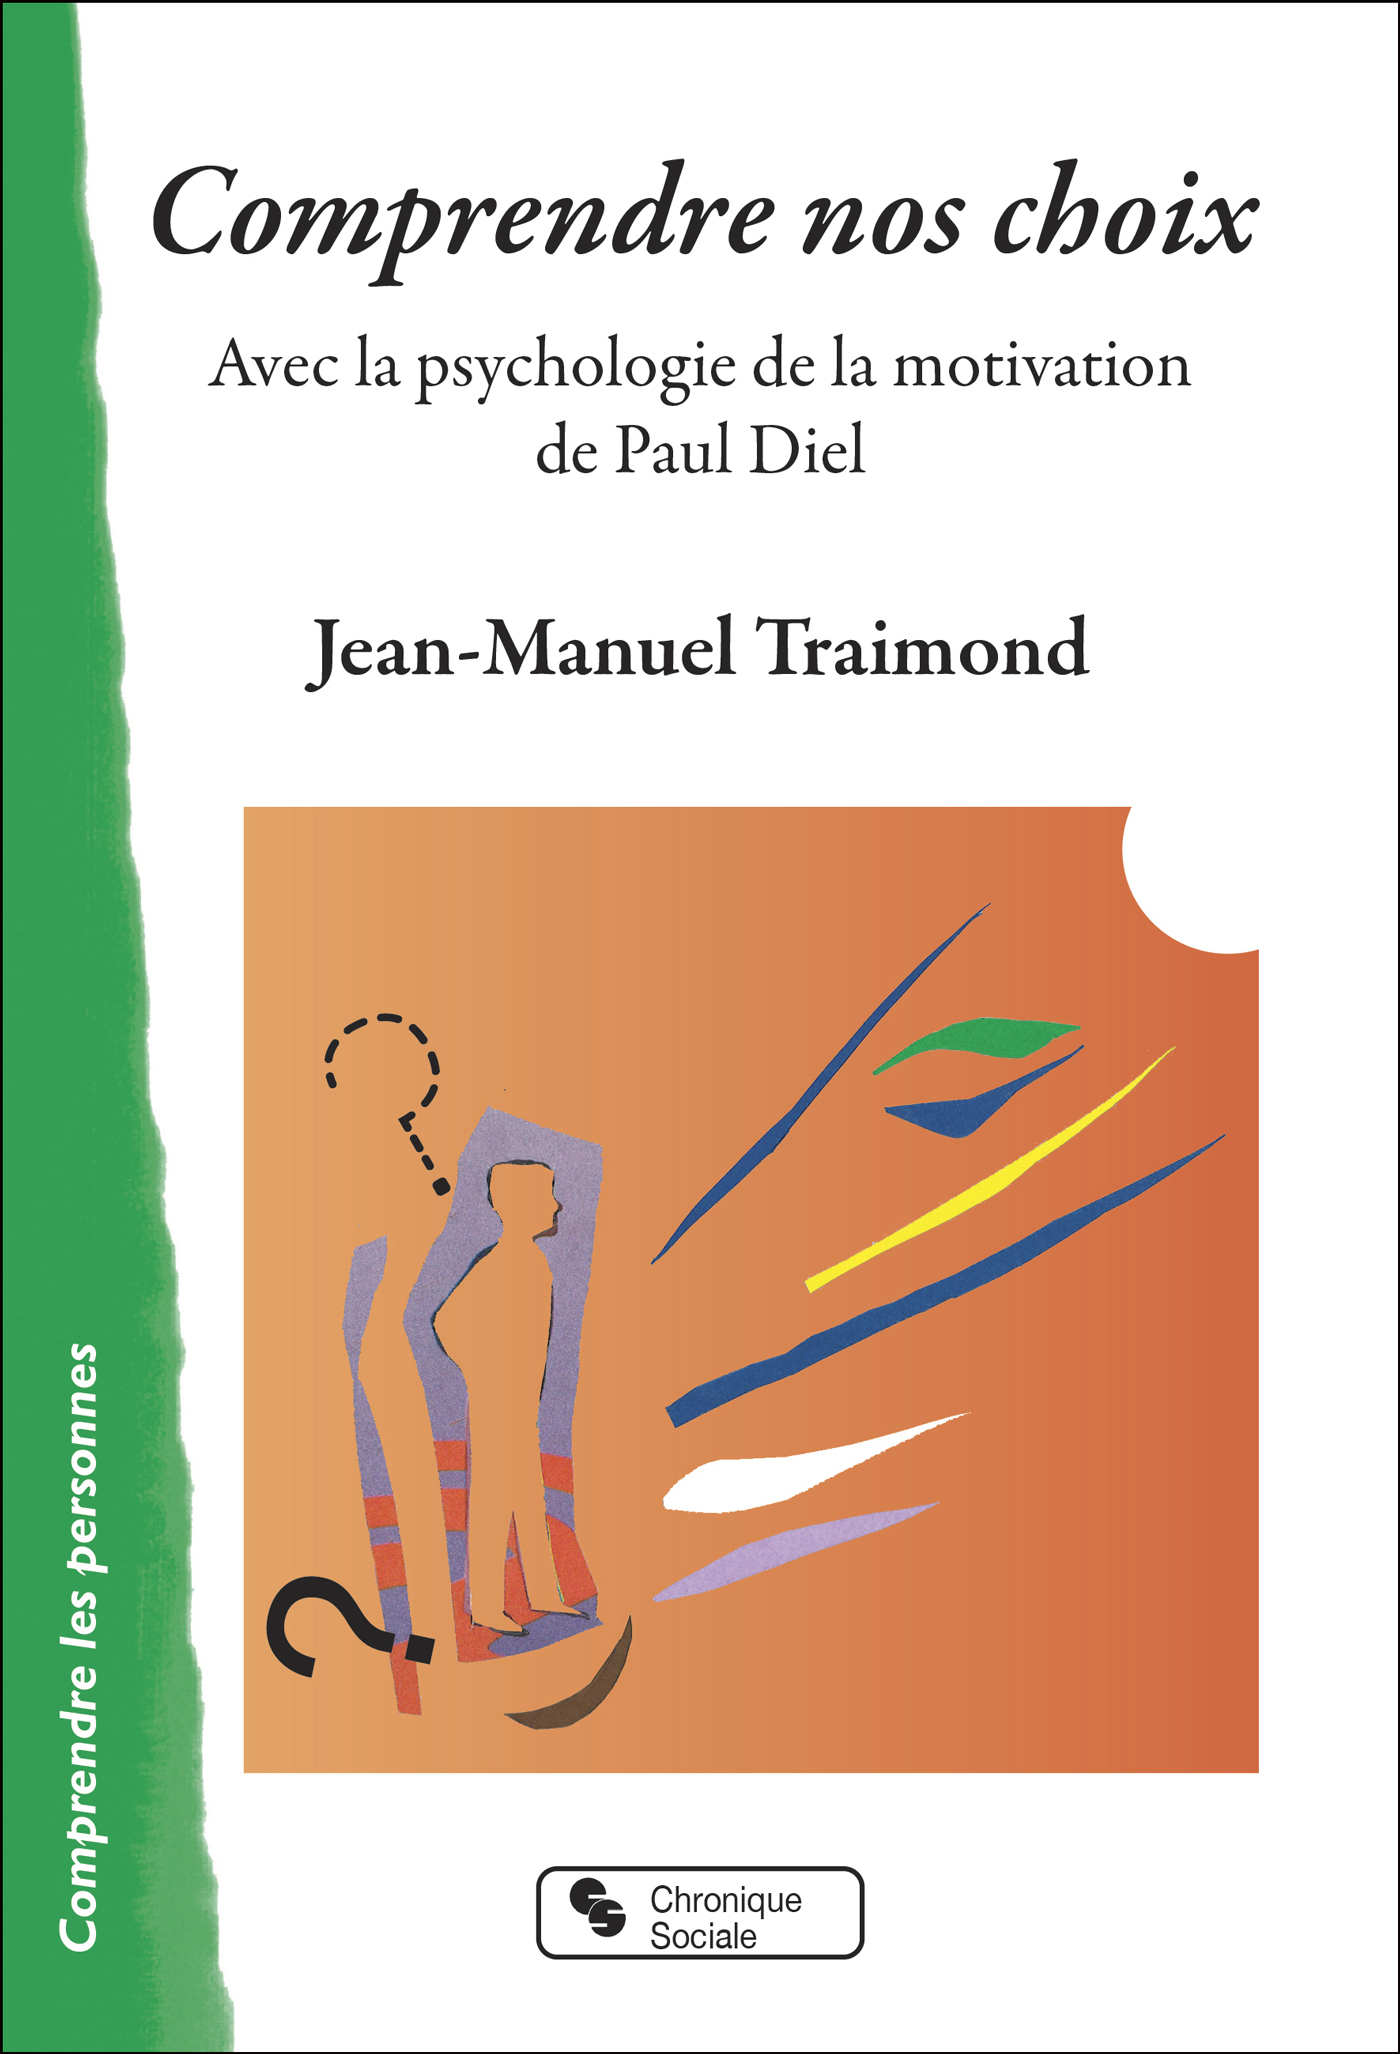 Comprendre nos choix, Avec la psychologie de la motivation de Paul Diel (9782367178899-front-cover)